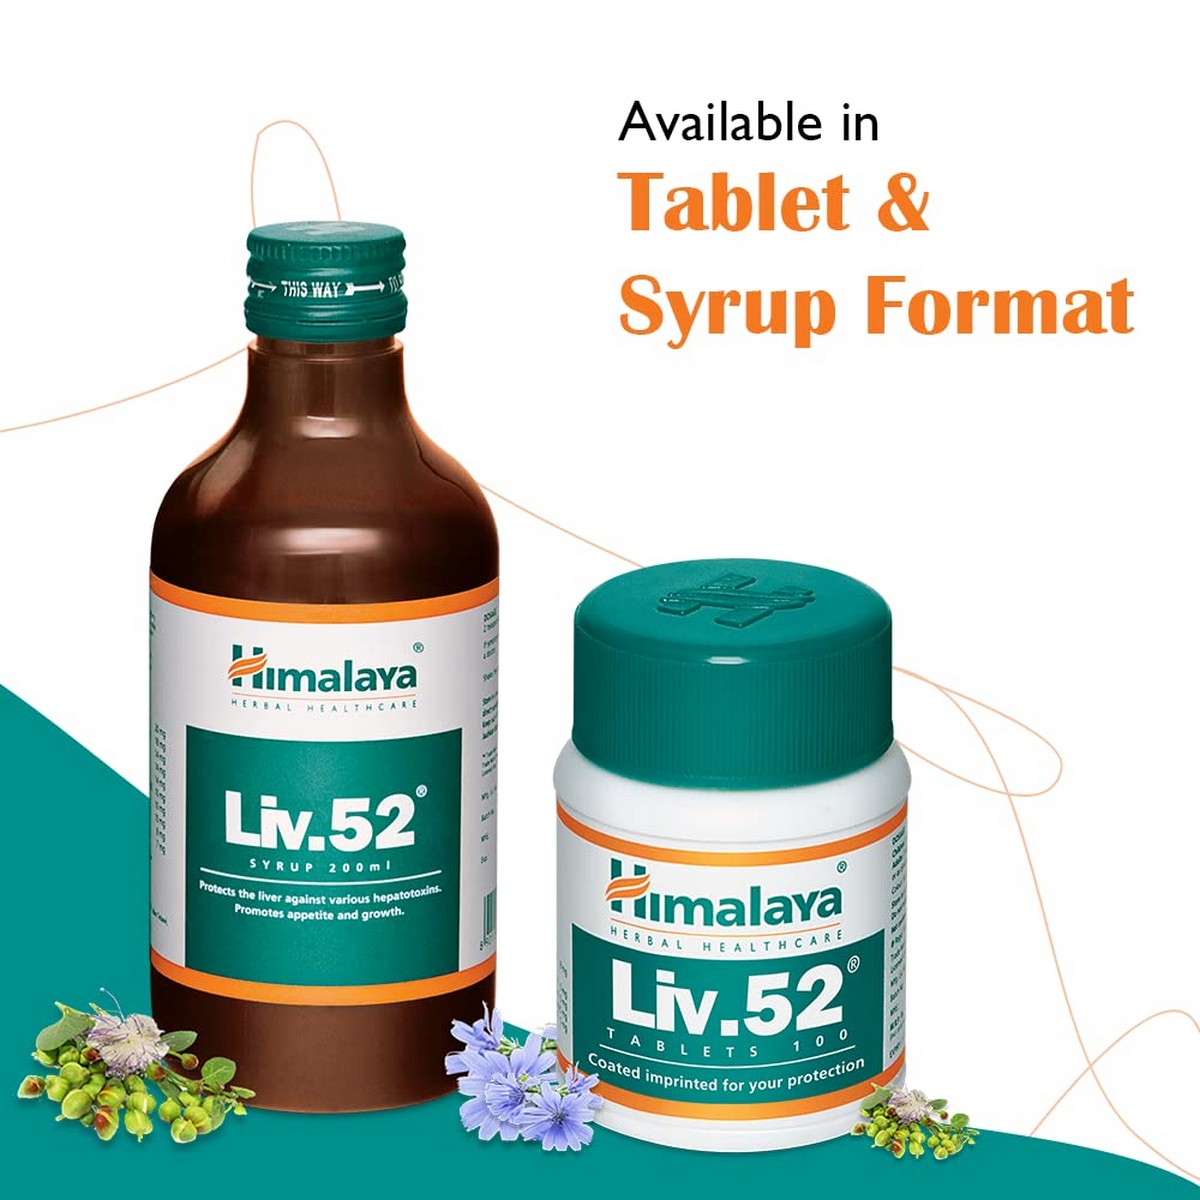 Liv-52 Forte Tablet - Liver Supplement - Himalaya - 12% Off